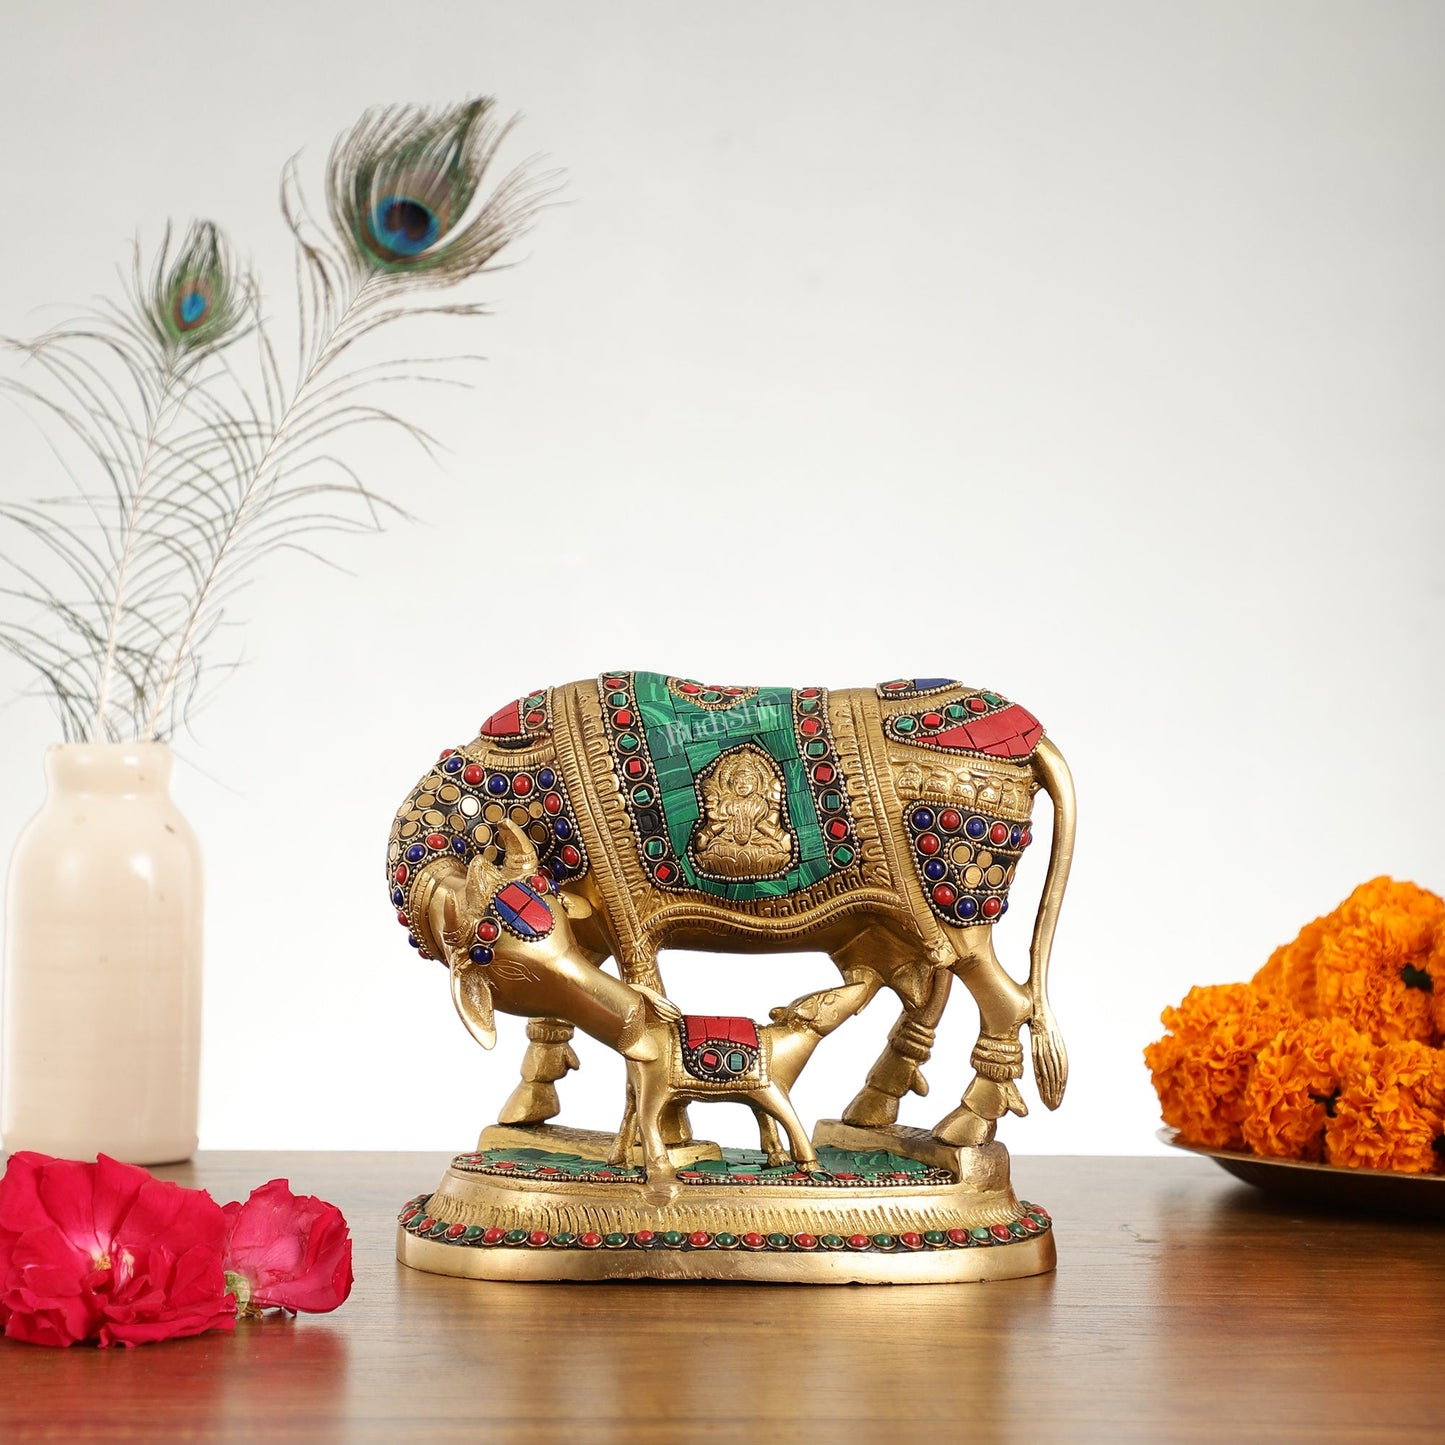 Kaamdhenu Brass Idol with Ganesha and Lakshmi Engravings | 6.5" x 8" x 5 - Budhshiv.com